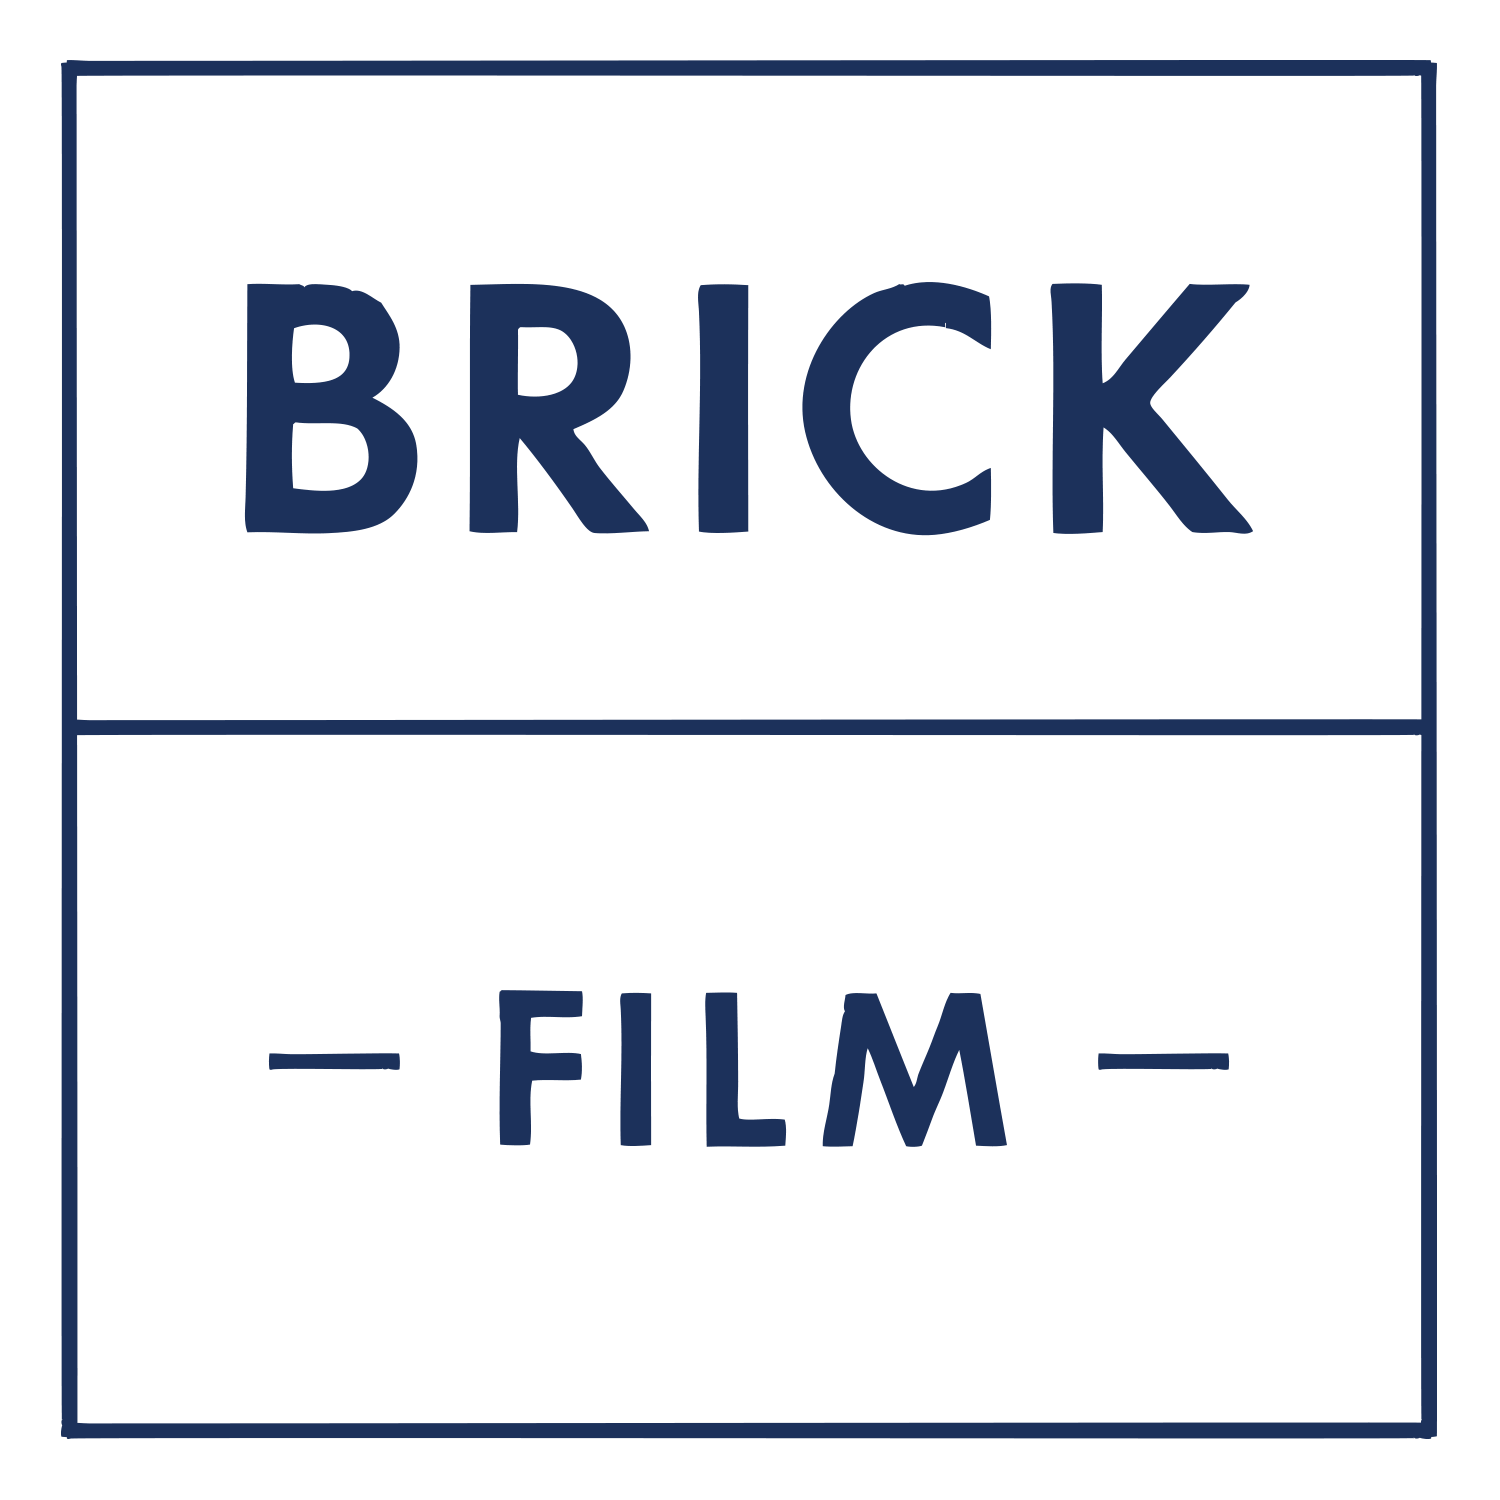 Brick Film